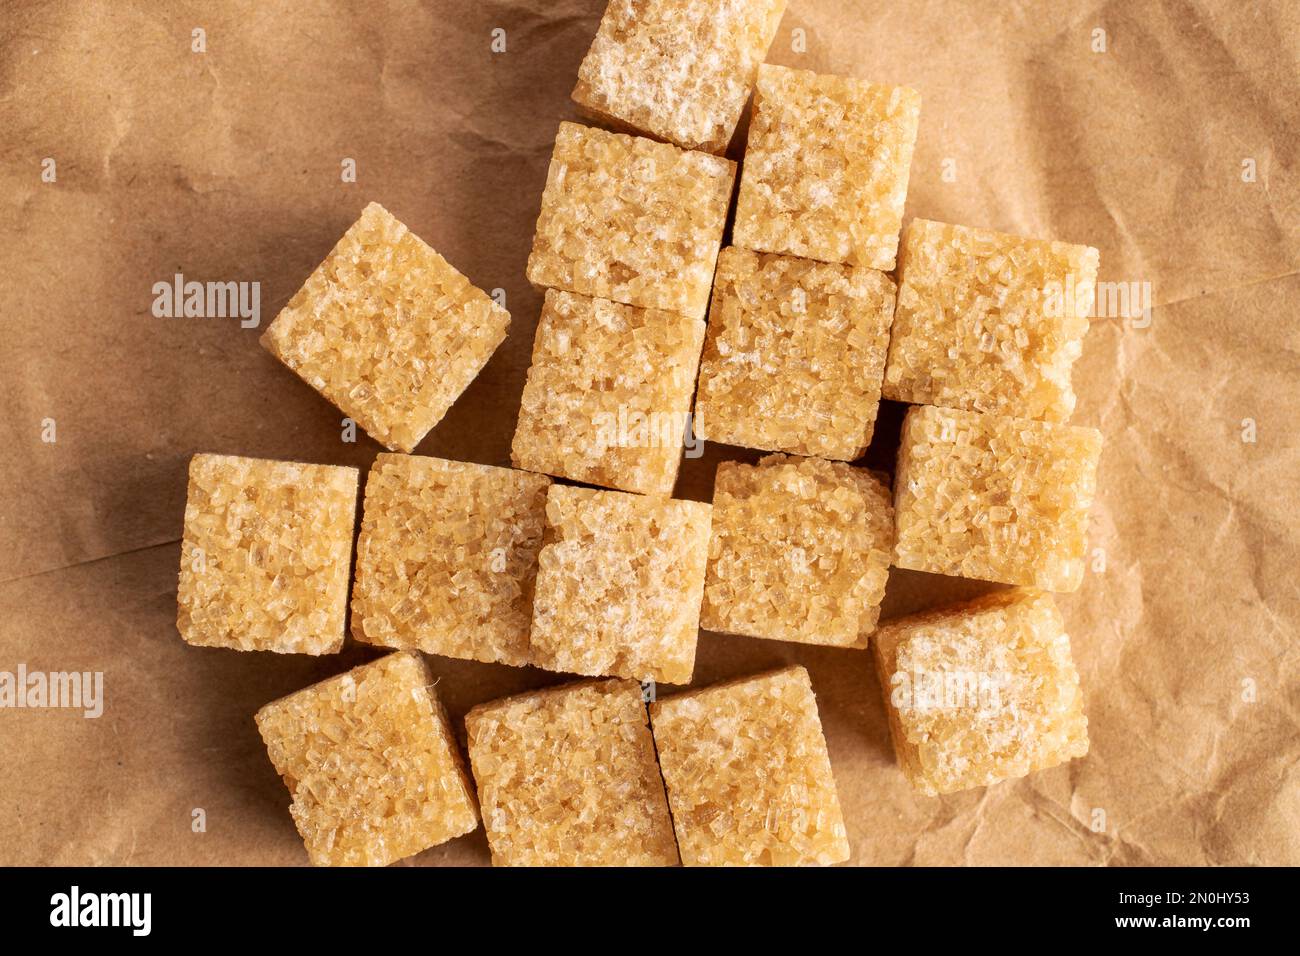 Diversi cubetti di zucchero di canna, primo piano, su carta marrone, vista dall'alto. Foto Stock